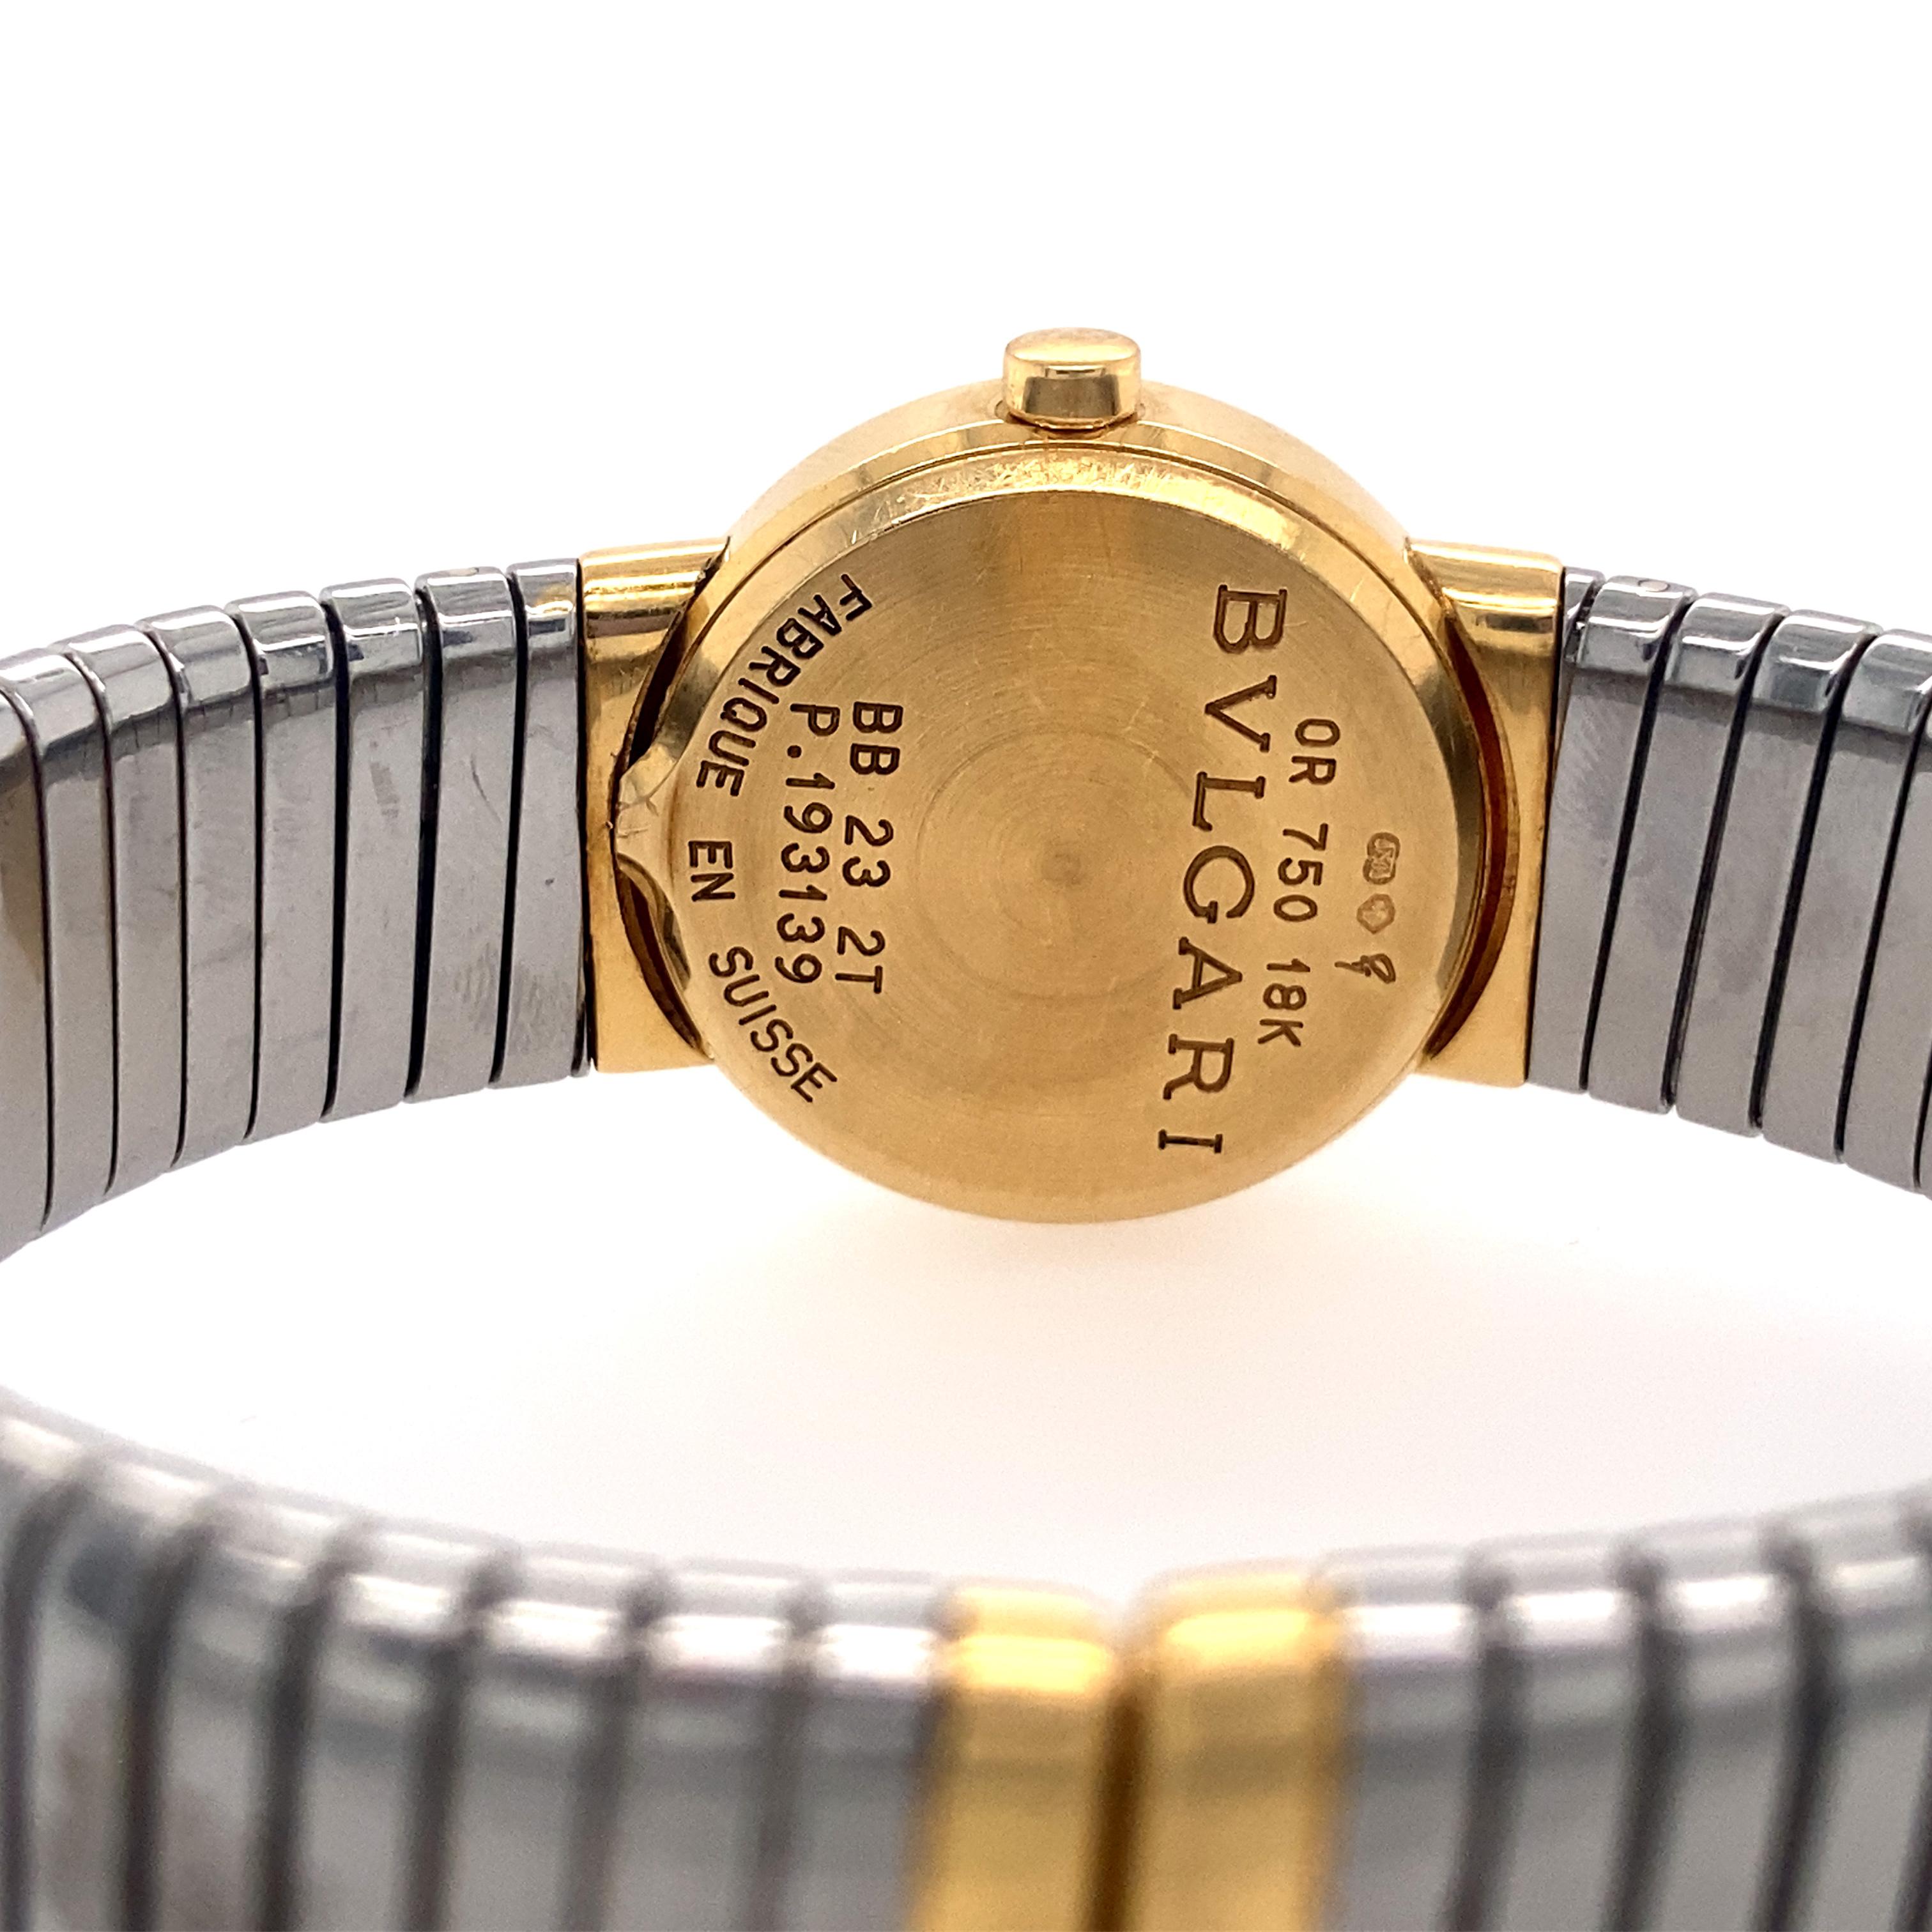 Bulgari Tubogas-Armbanduhr mit einem Schweizer Quarzwerk, schwarzem Zifferblatt mit goldenen Zeigern und Indexen sowie einem 23 mm großen Gehäuse aus 18 Karat Gelbgold und Edelstahl mit einer Lünette aus 18 Karat Gelbgold an einem